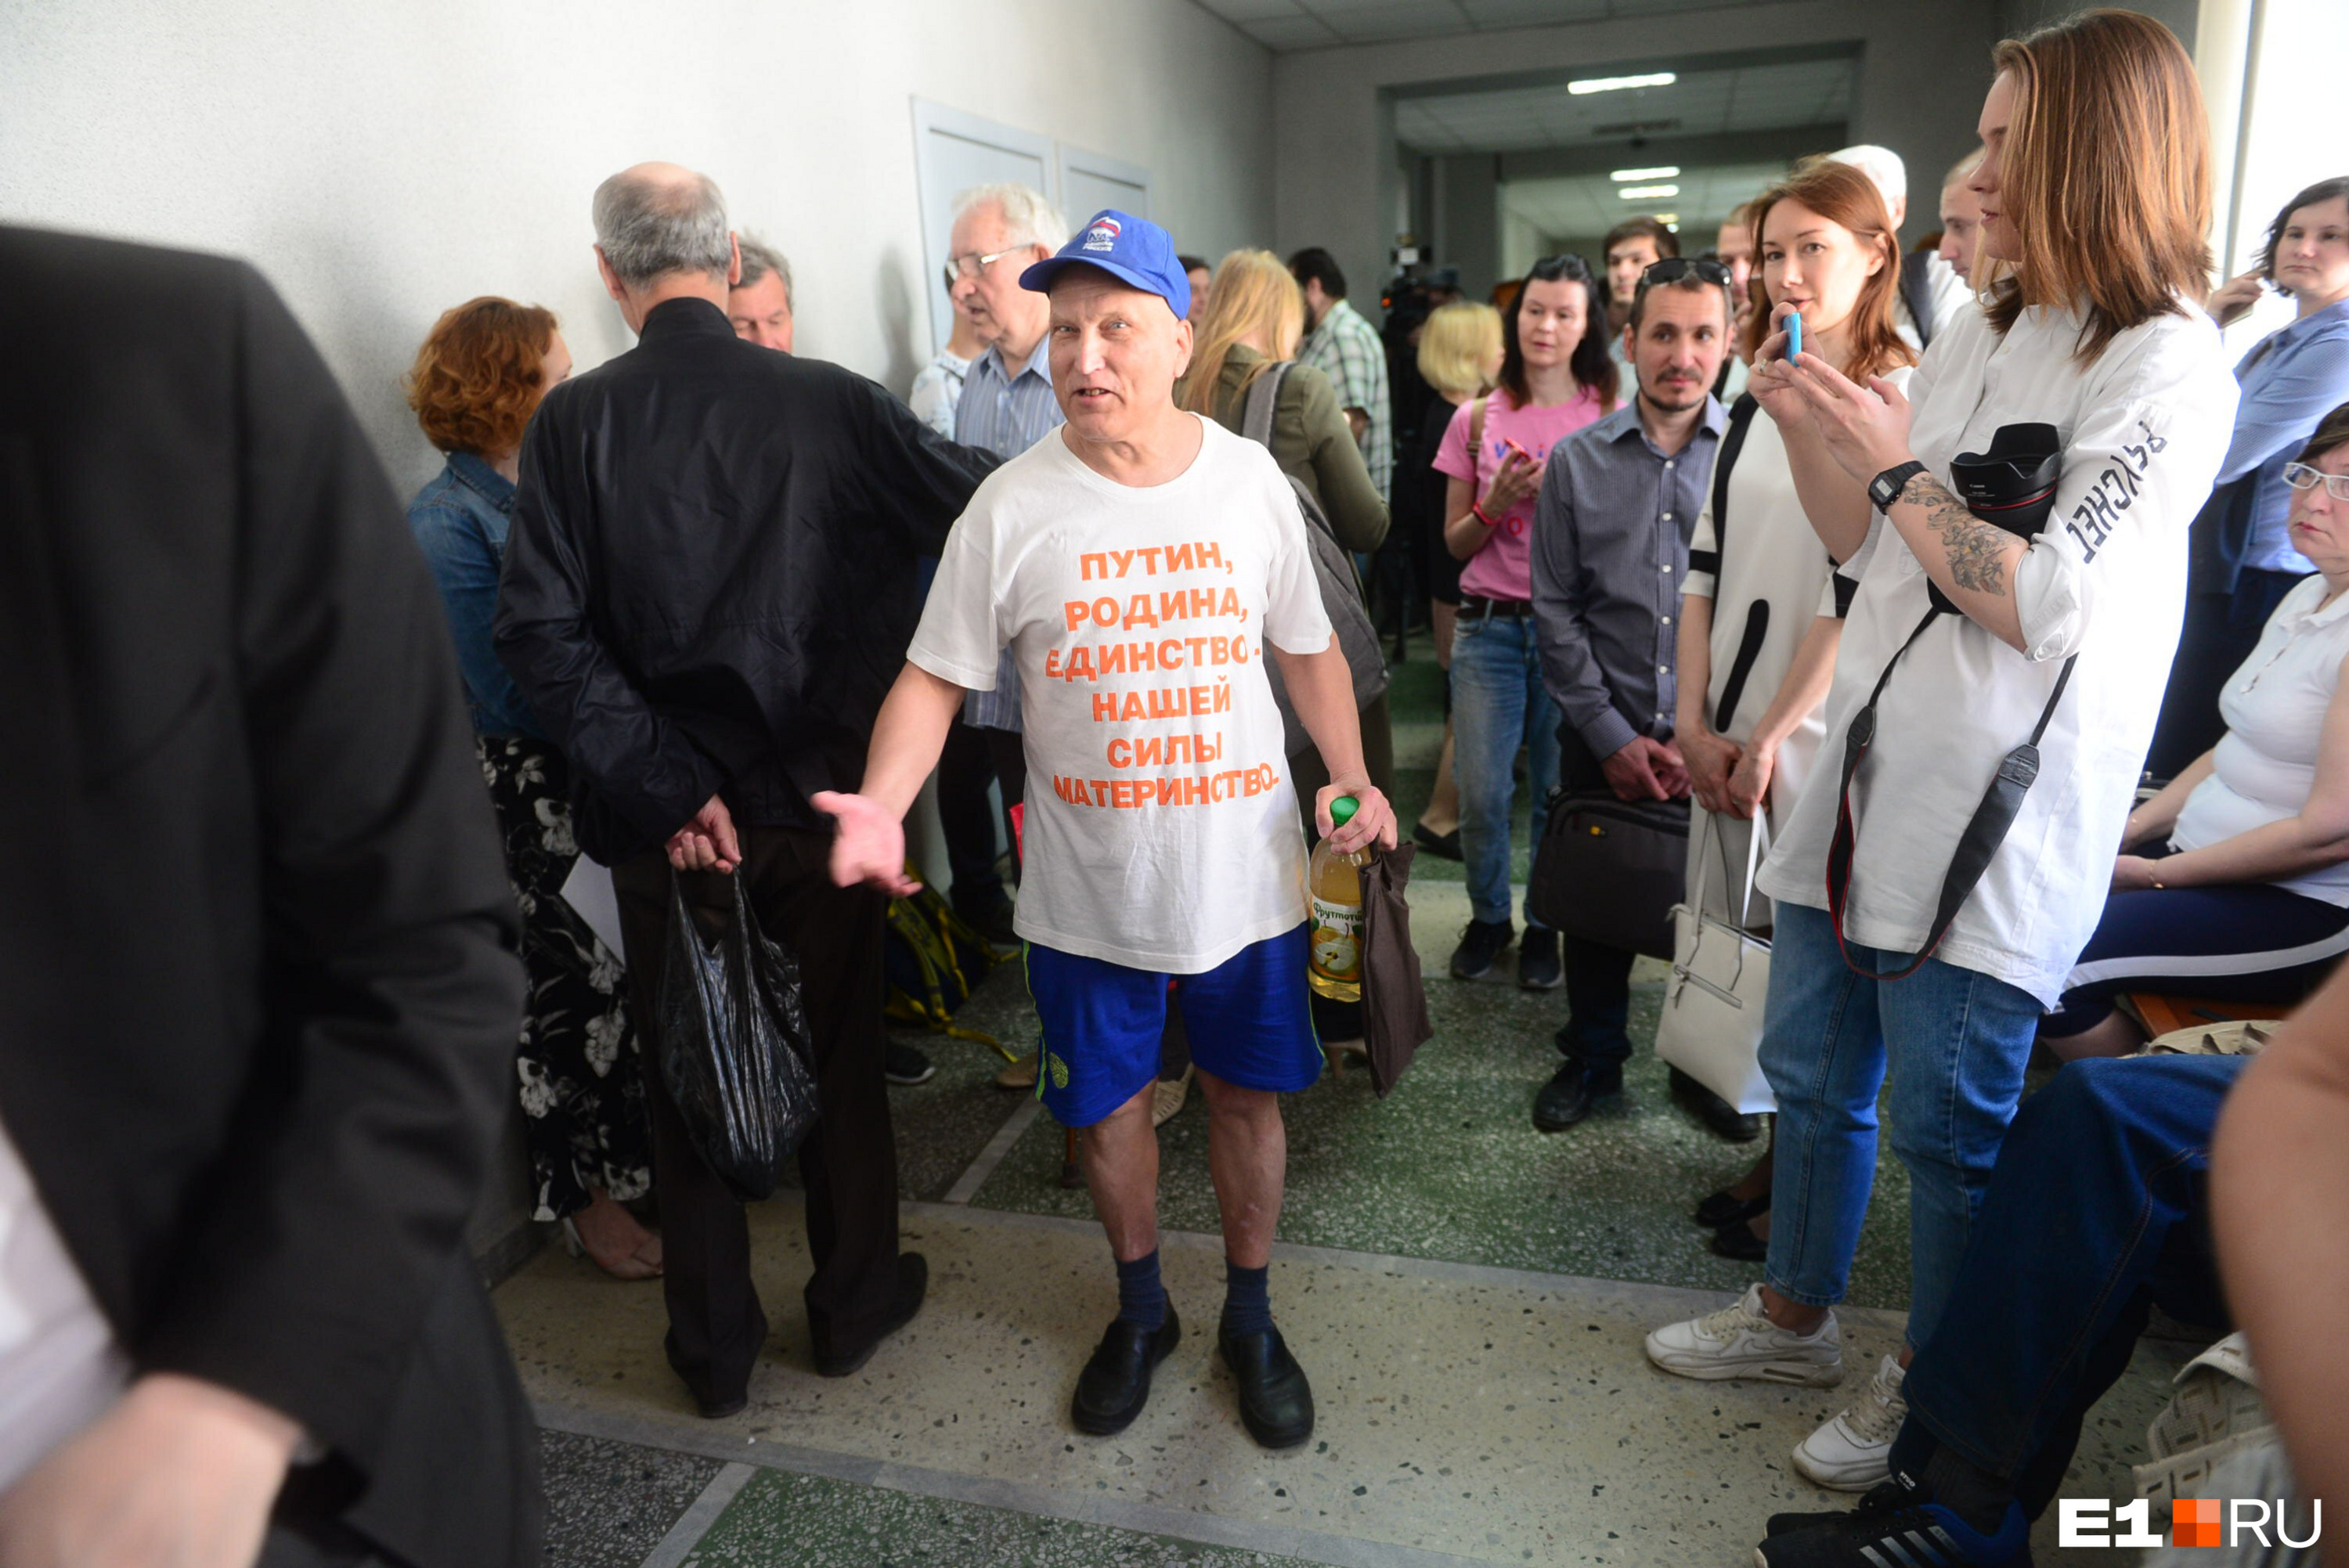 Этот дедушка неустанно напоминал полицейским, что они «позорят Путина»